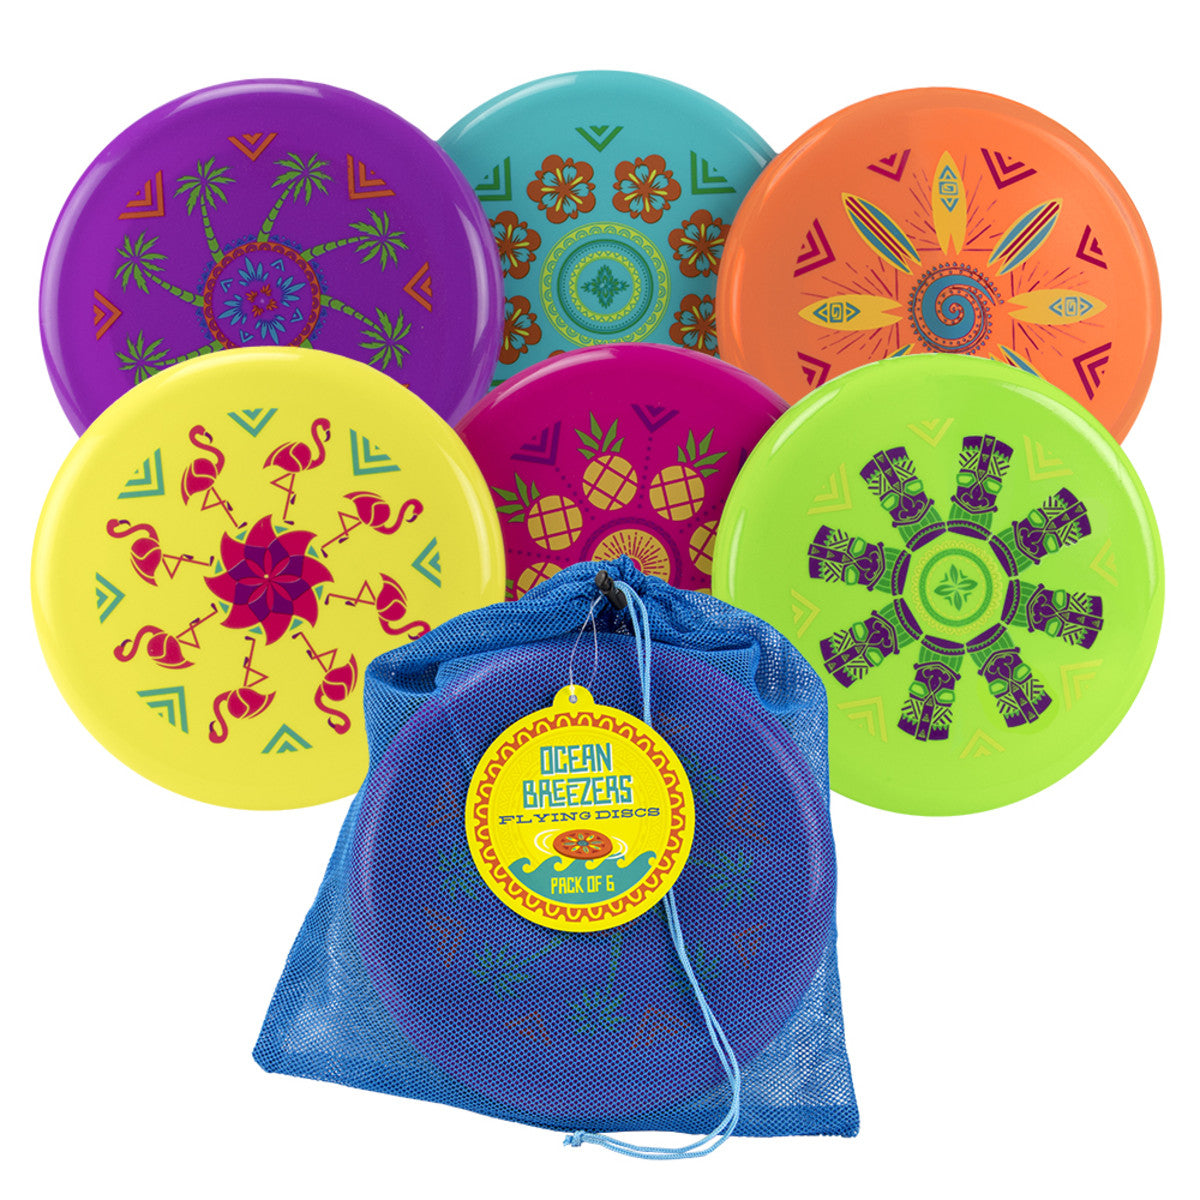 Ocean Breezers Flying Discs (Assorted Styles)